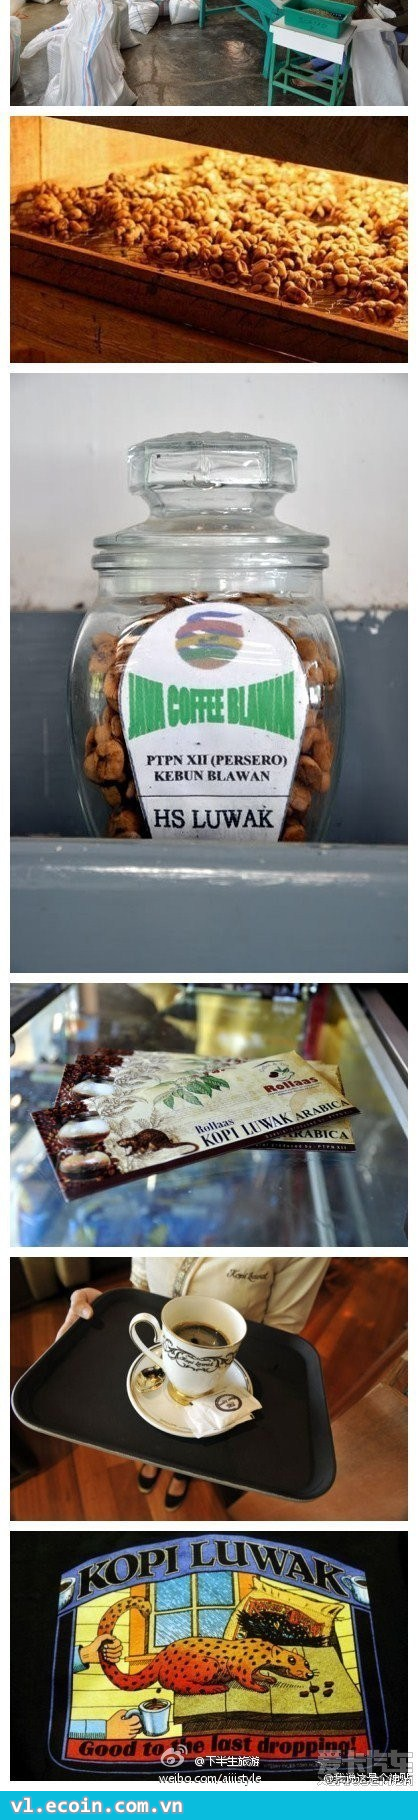 Hãy xem tại sao "Kopi Luwak" lại là cà phê đắt nhất thế giới?